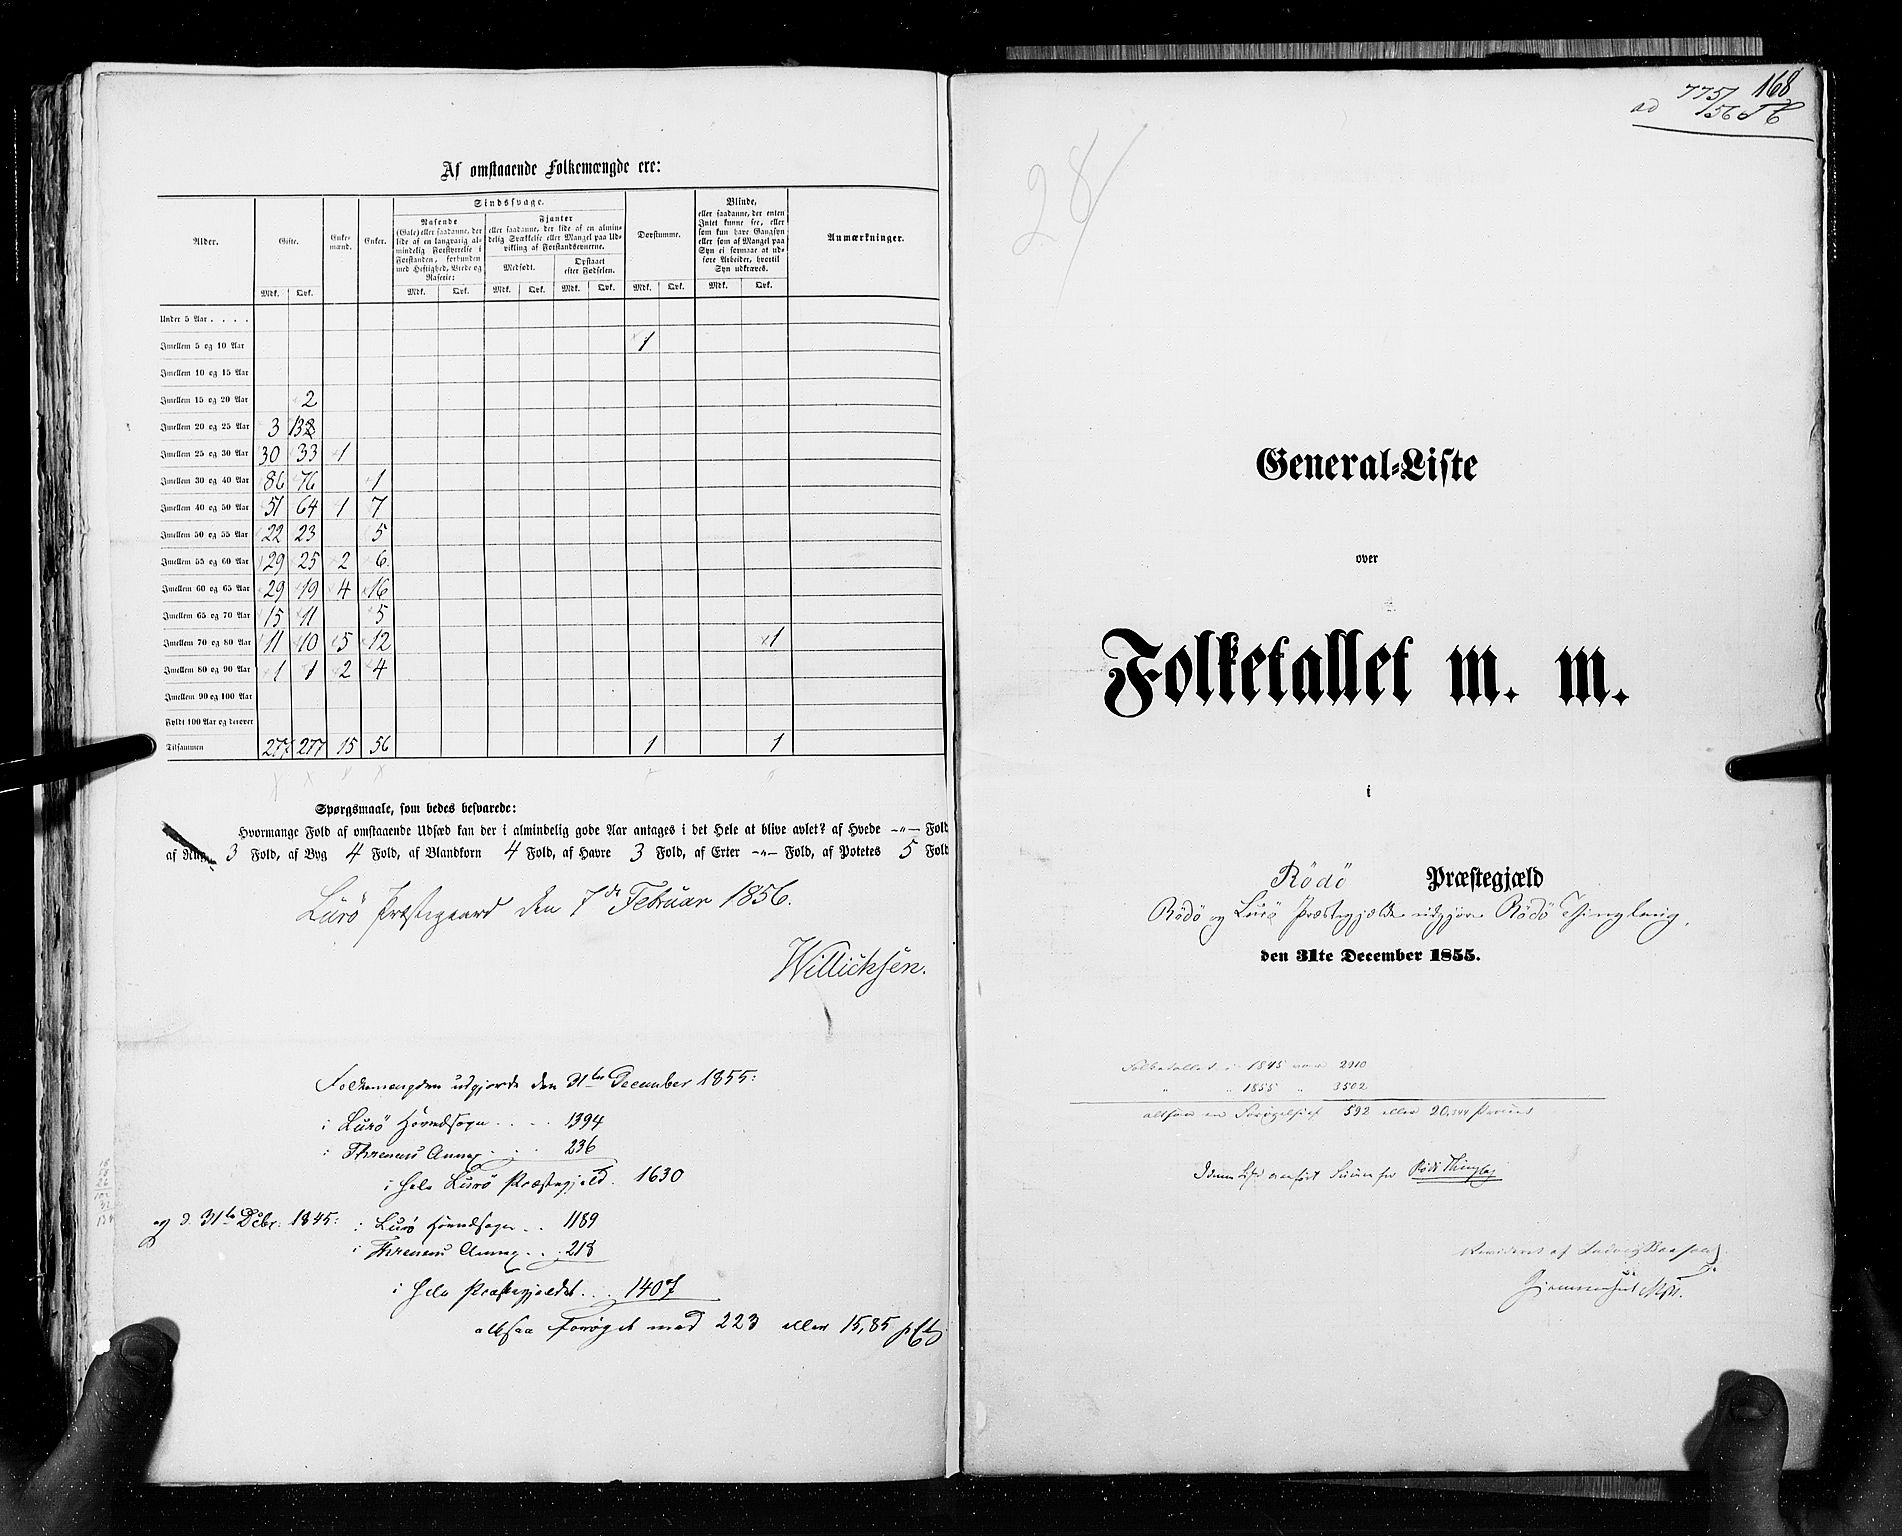 RA, Census 1855, vol. 6A: Nordre Trondhjem amt og Nordland amt, 1855, p. 168